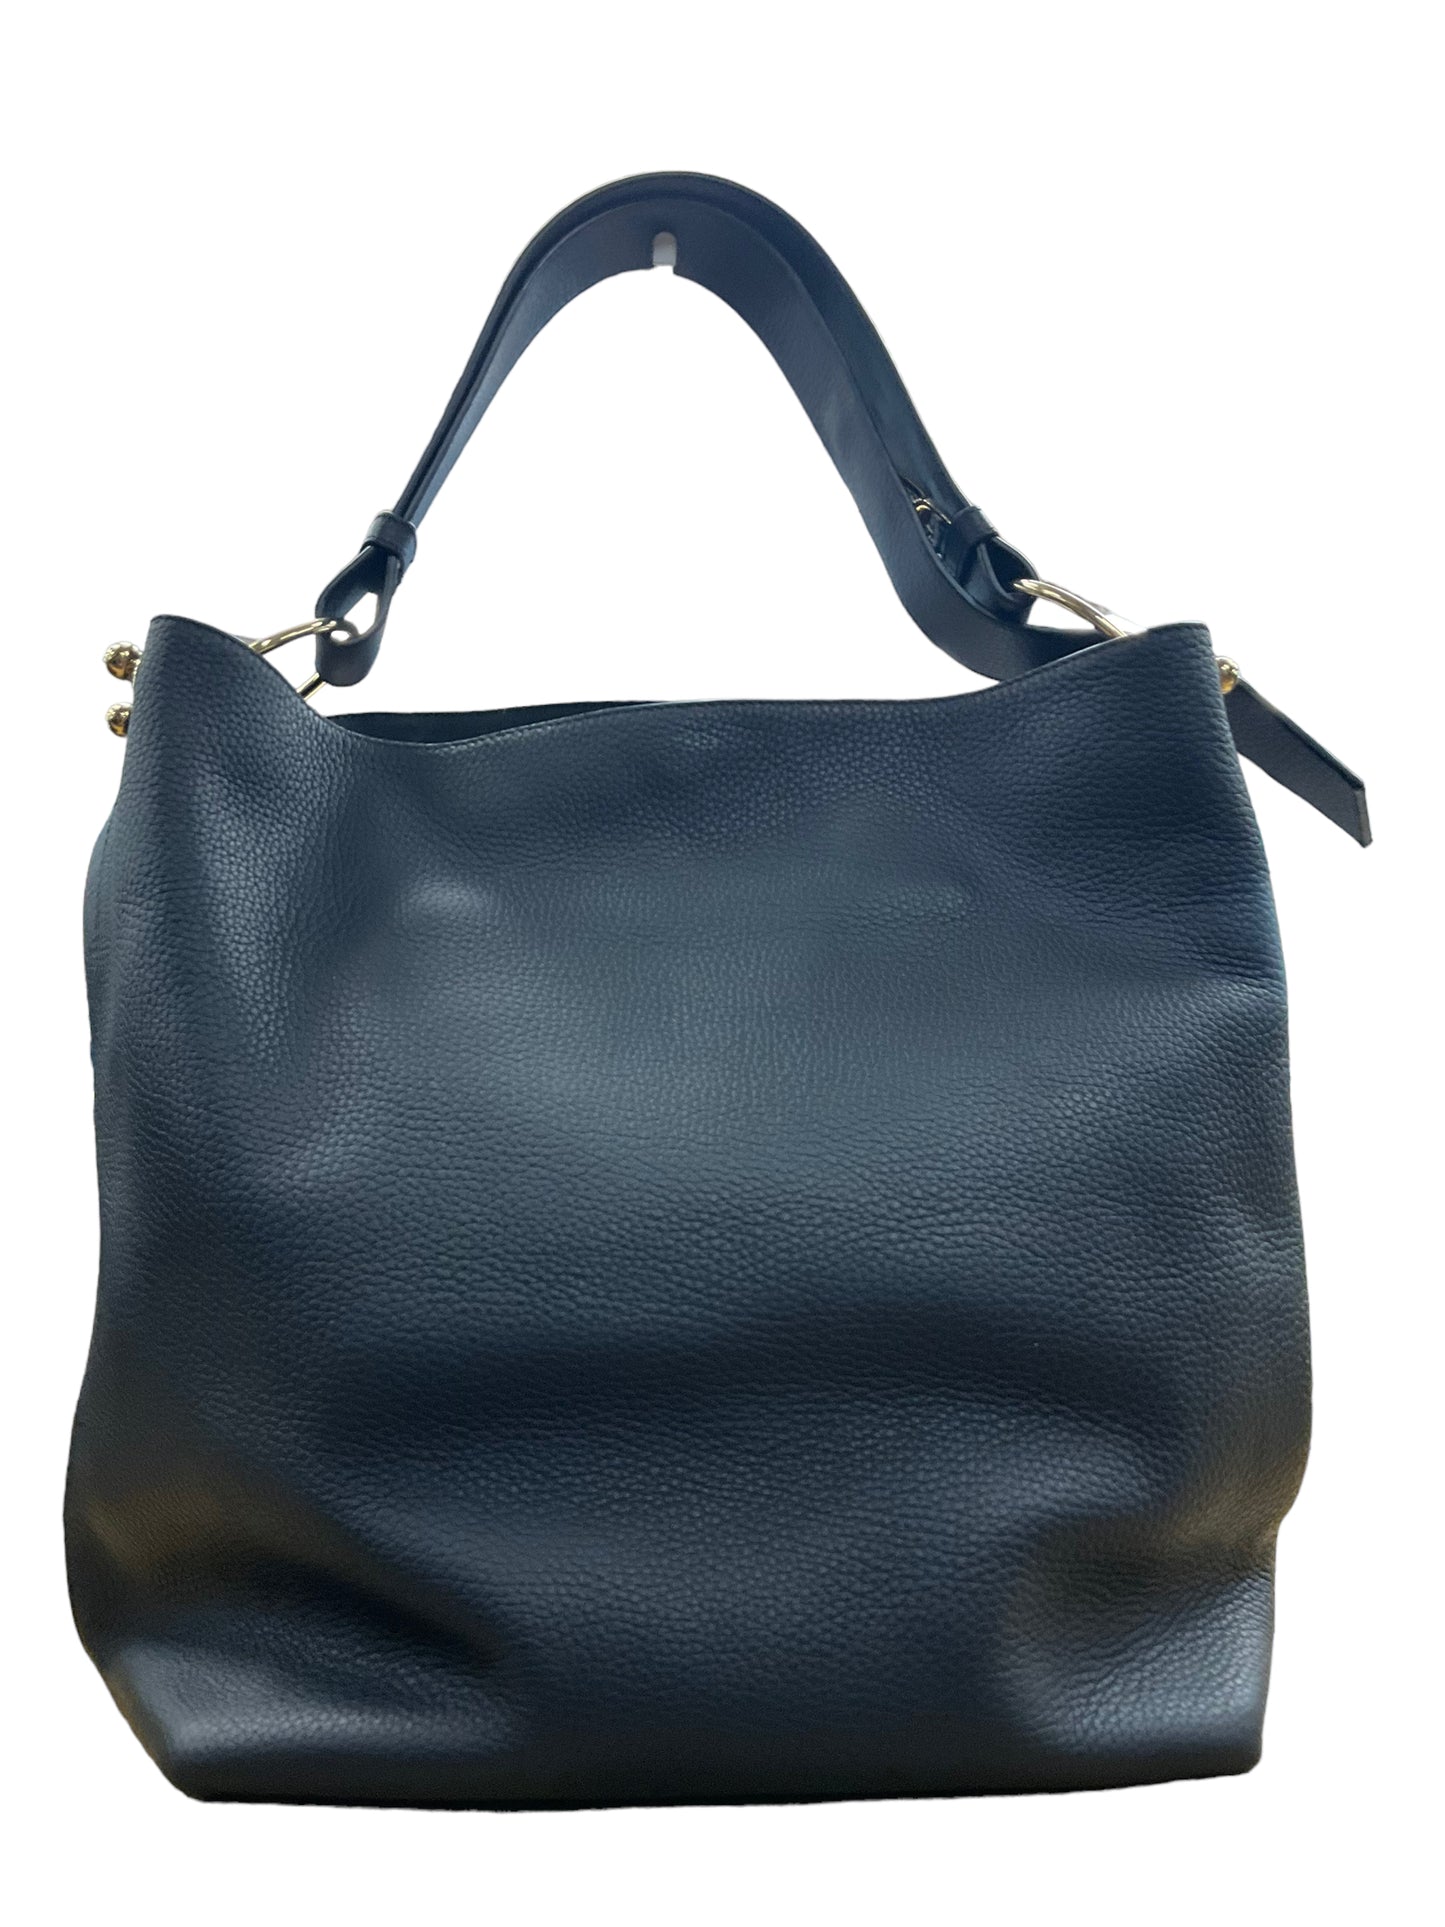 Handbag Designer By Clothes Mentor  Size: Large